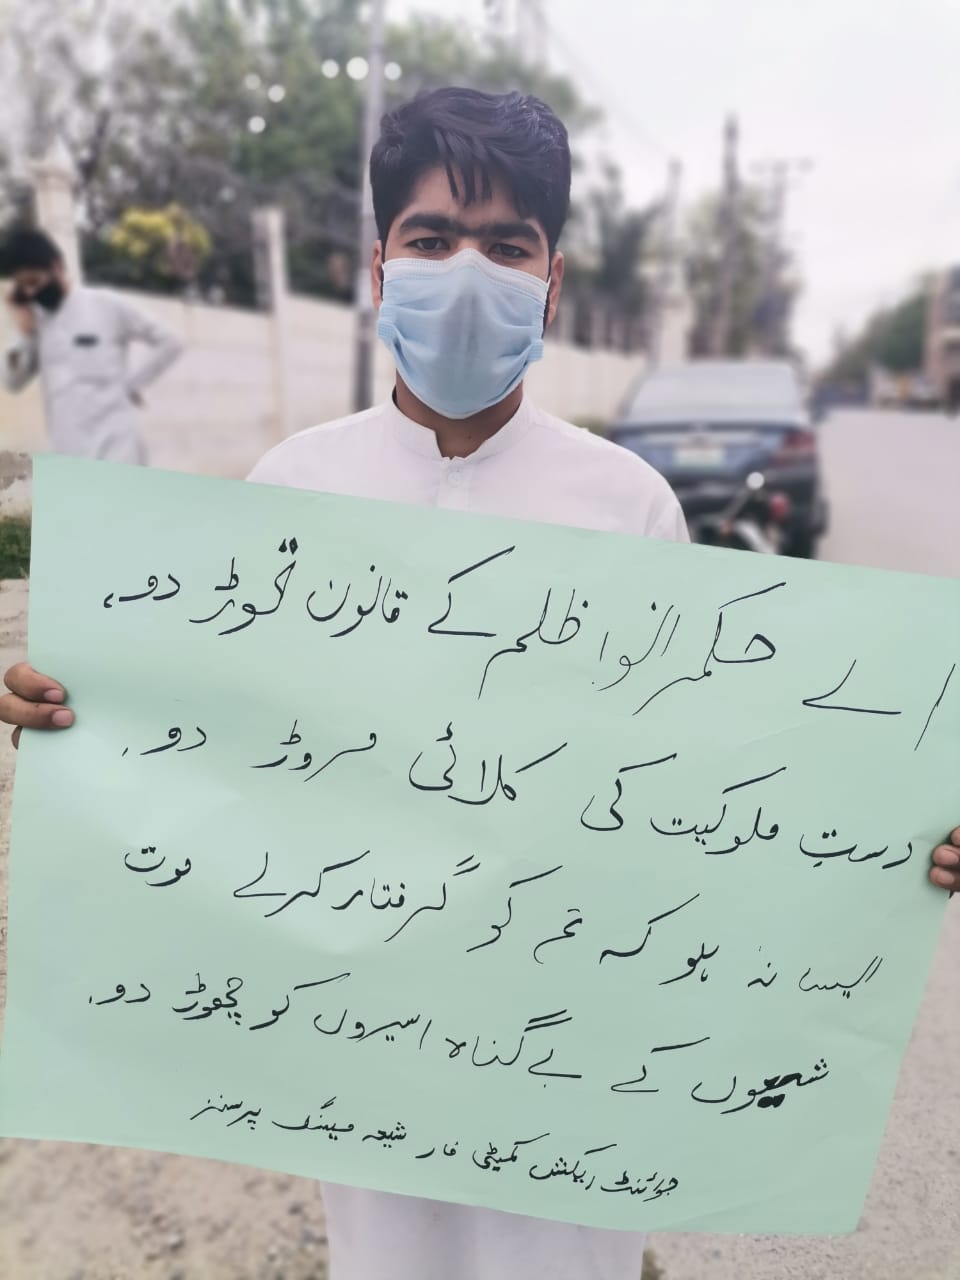 لاپتہ شیعہ افراد کی بازیابی کیلئے پشاور میں بھی احتجاج شروع